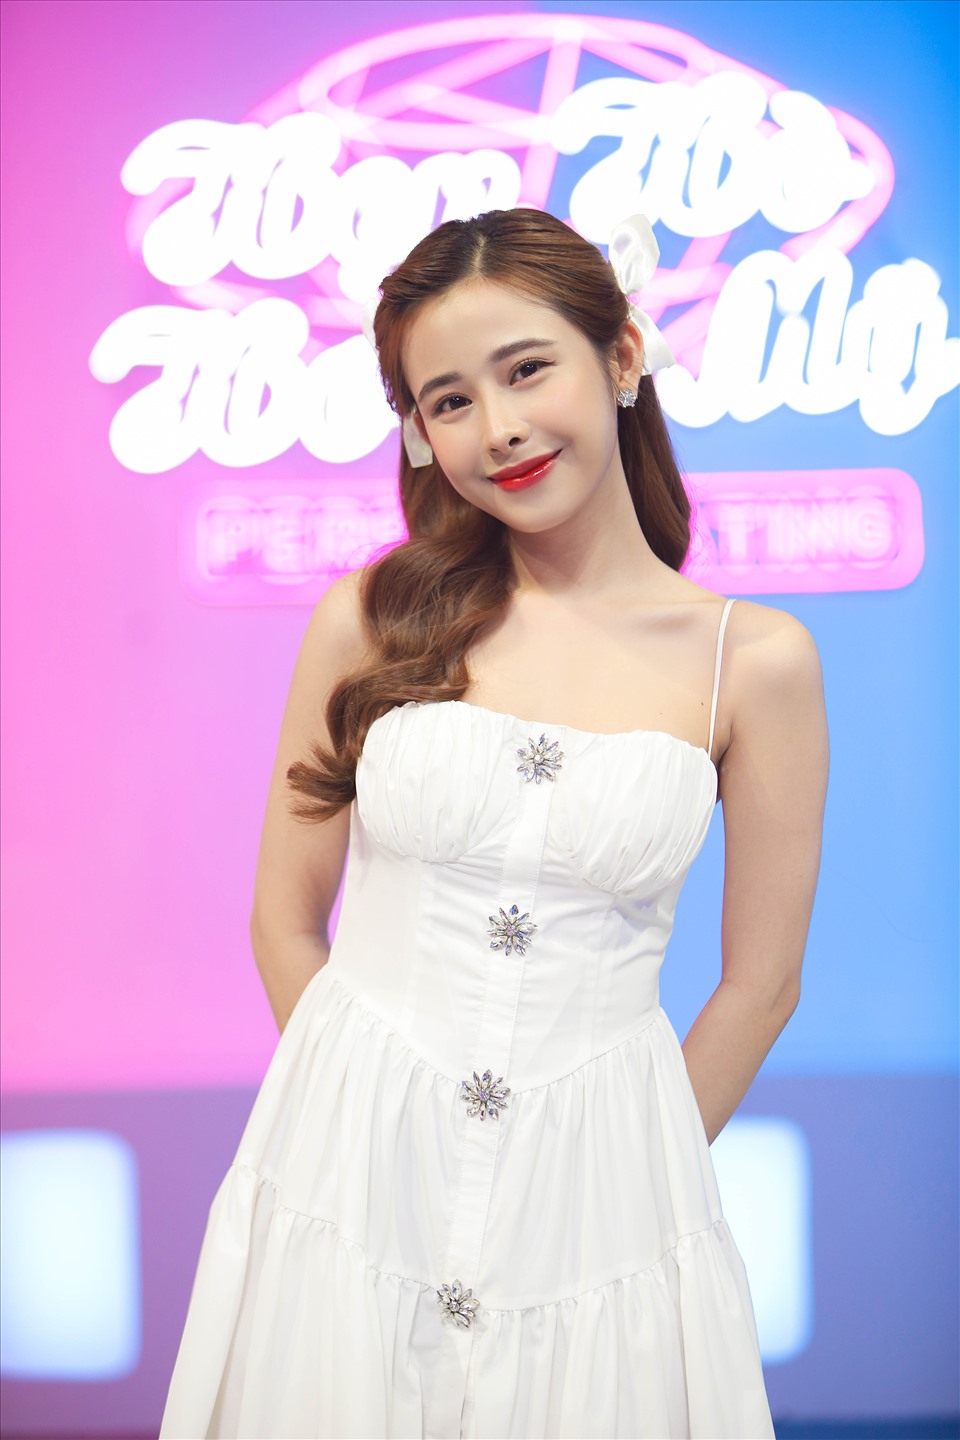 Diễn viên, người mẫu Phương Dung (sinh năm 1998) không chỉ được khán giả biết đến là một mẫu ảnh xinh đẹp mà còn để lại nhiều ấn tượng qua một số bộ phim như “Tình đầu đại ca”, “Friendzone”. Ảnh: CTCC.